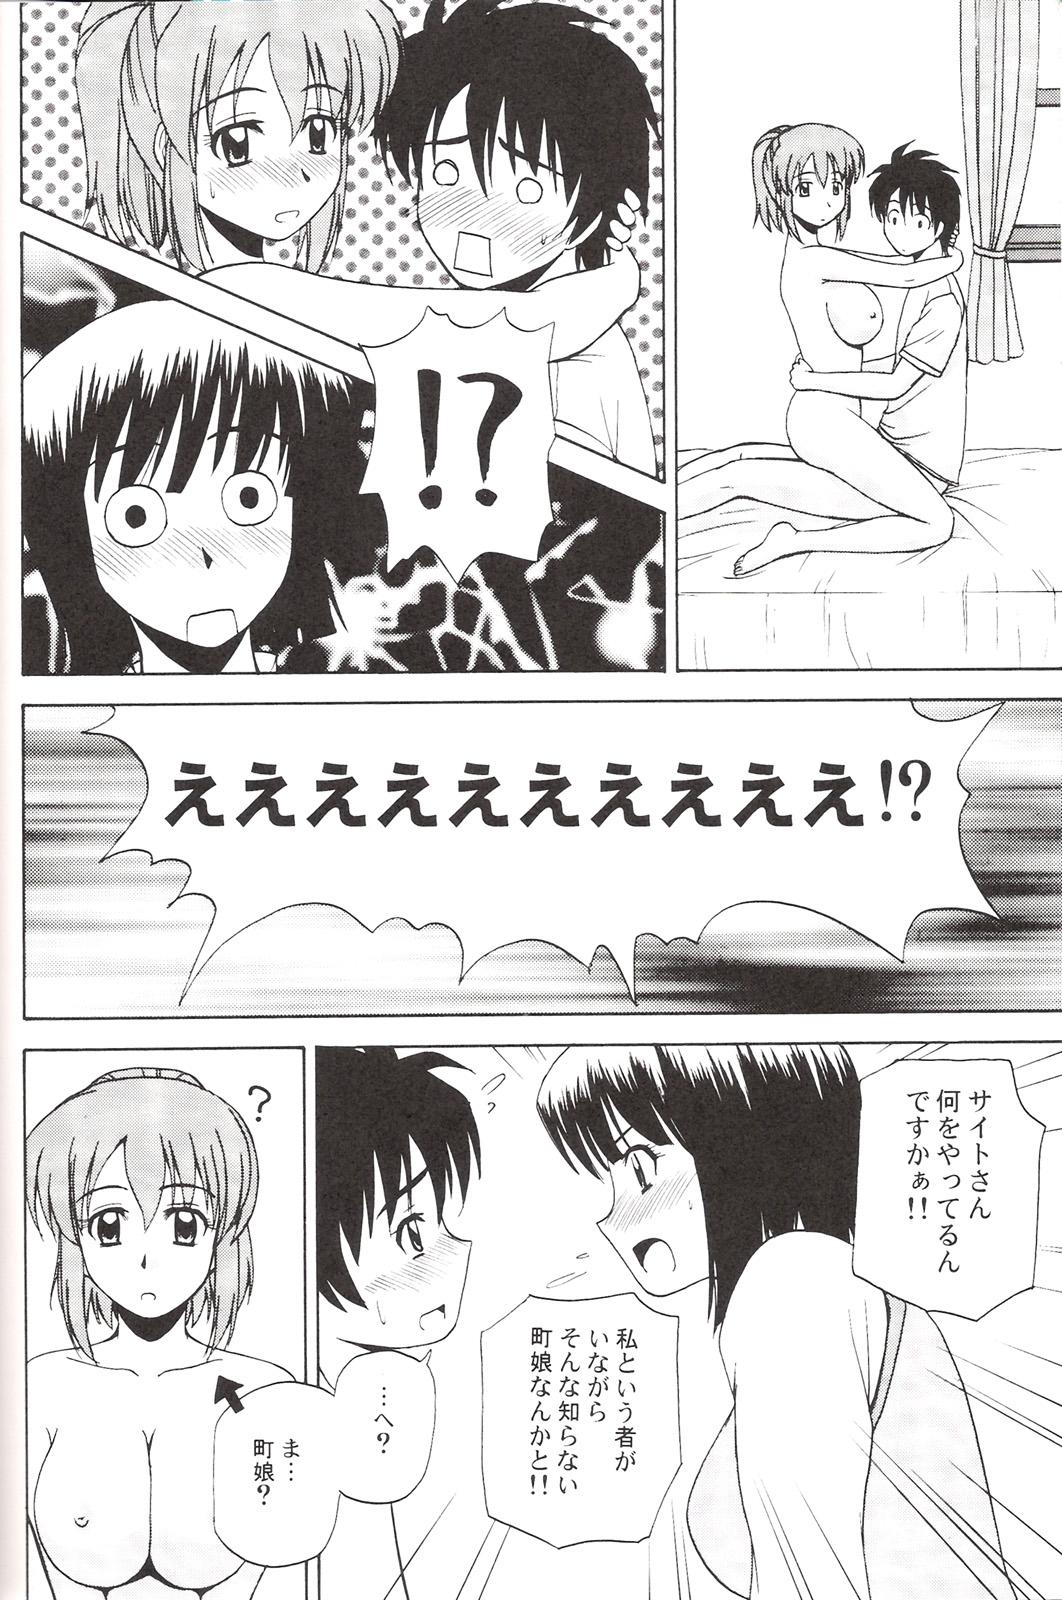 Lover Le beau maitre 3 - Zero no tsukaima Petite Teenager - Page 11